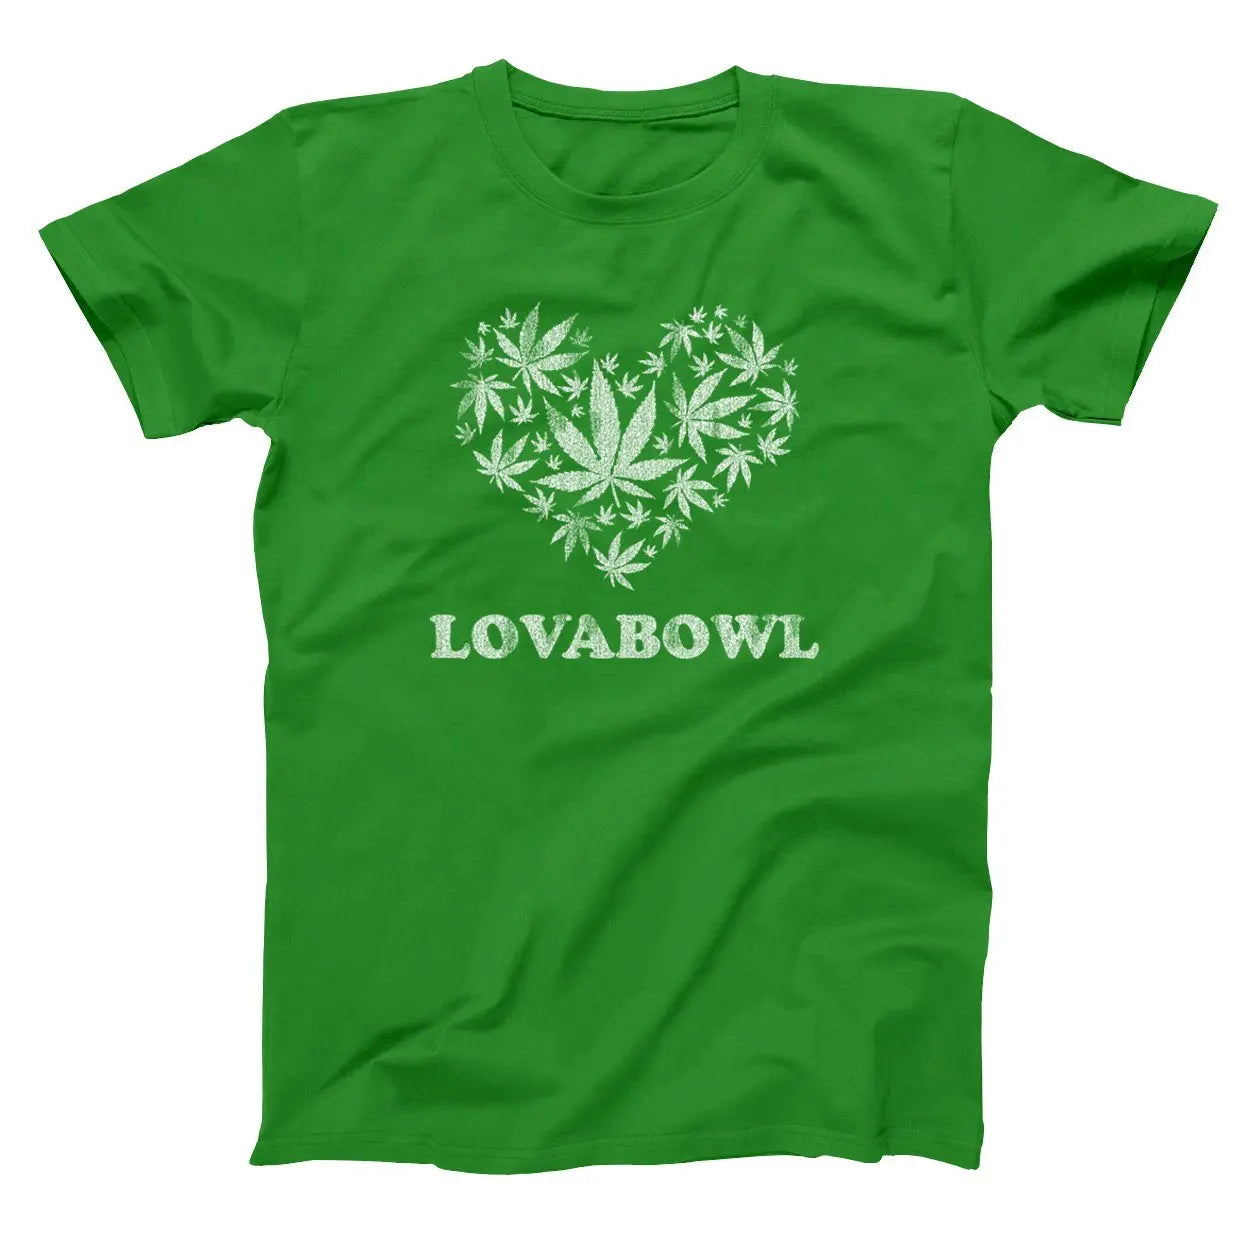 Love A Bowl Tshirt - Donkey Tees